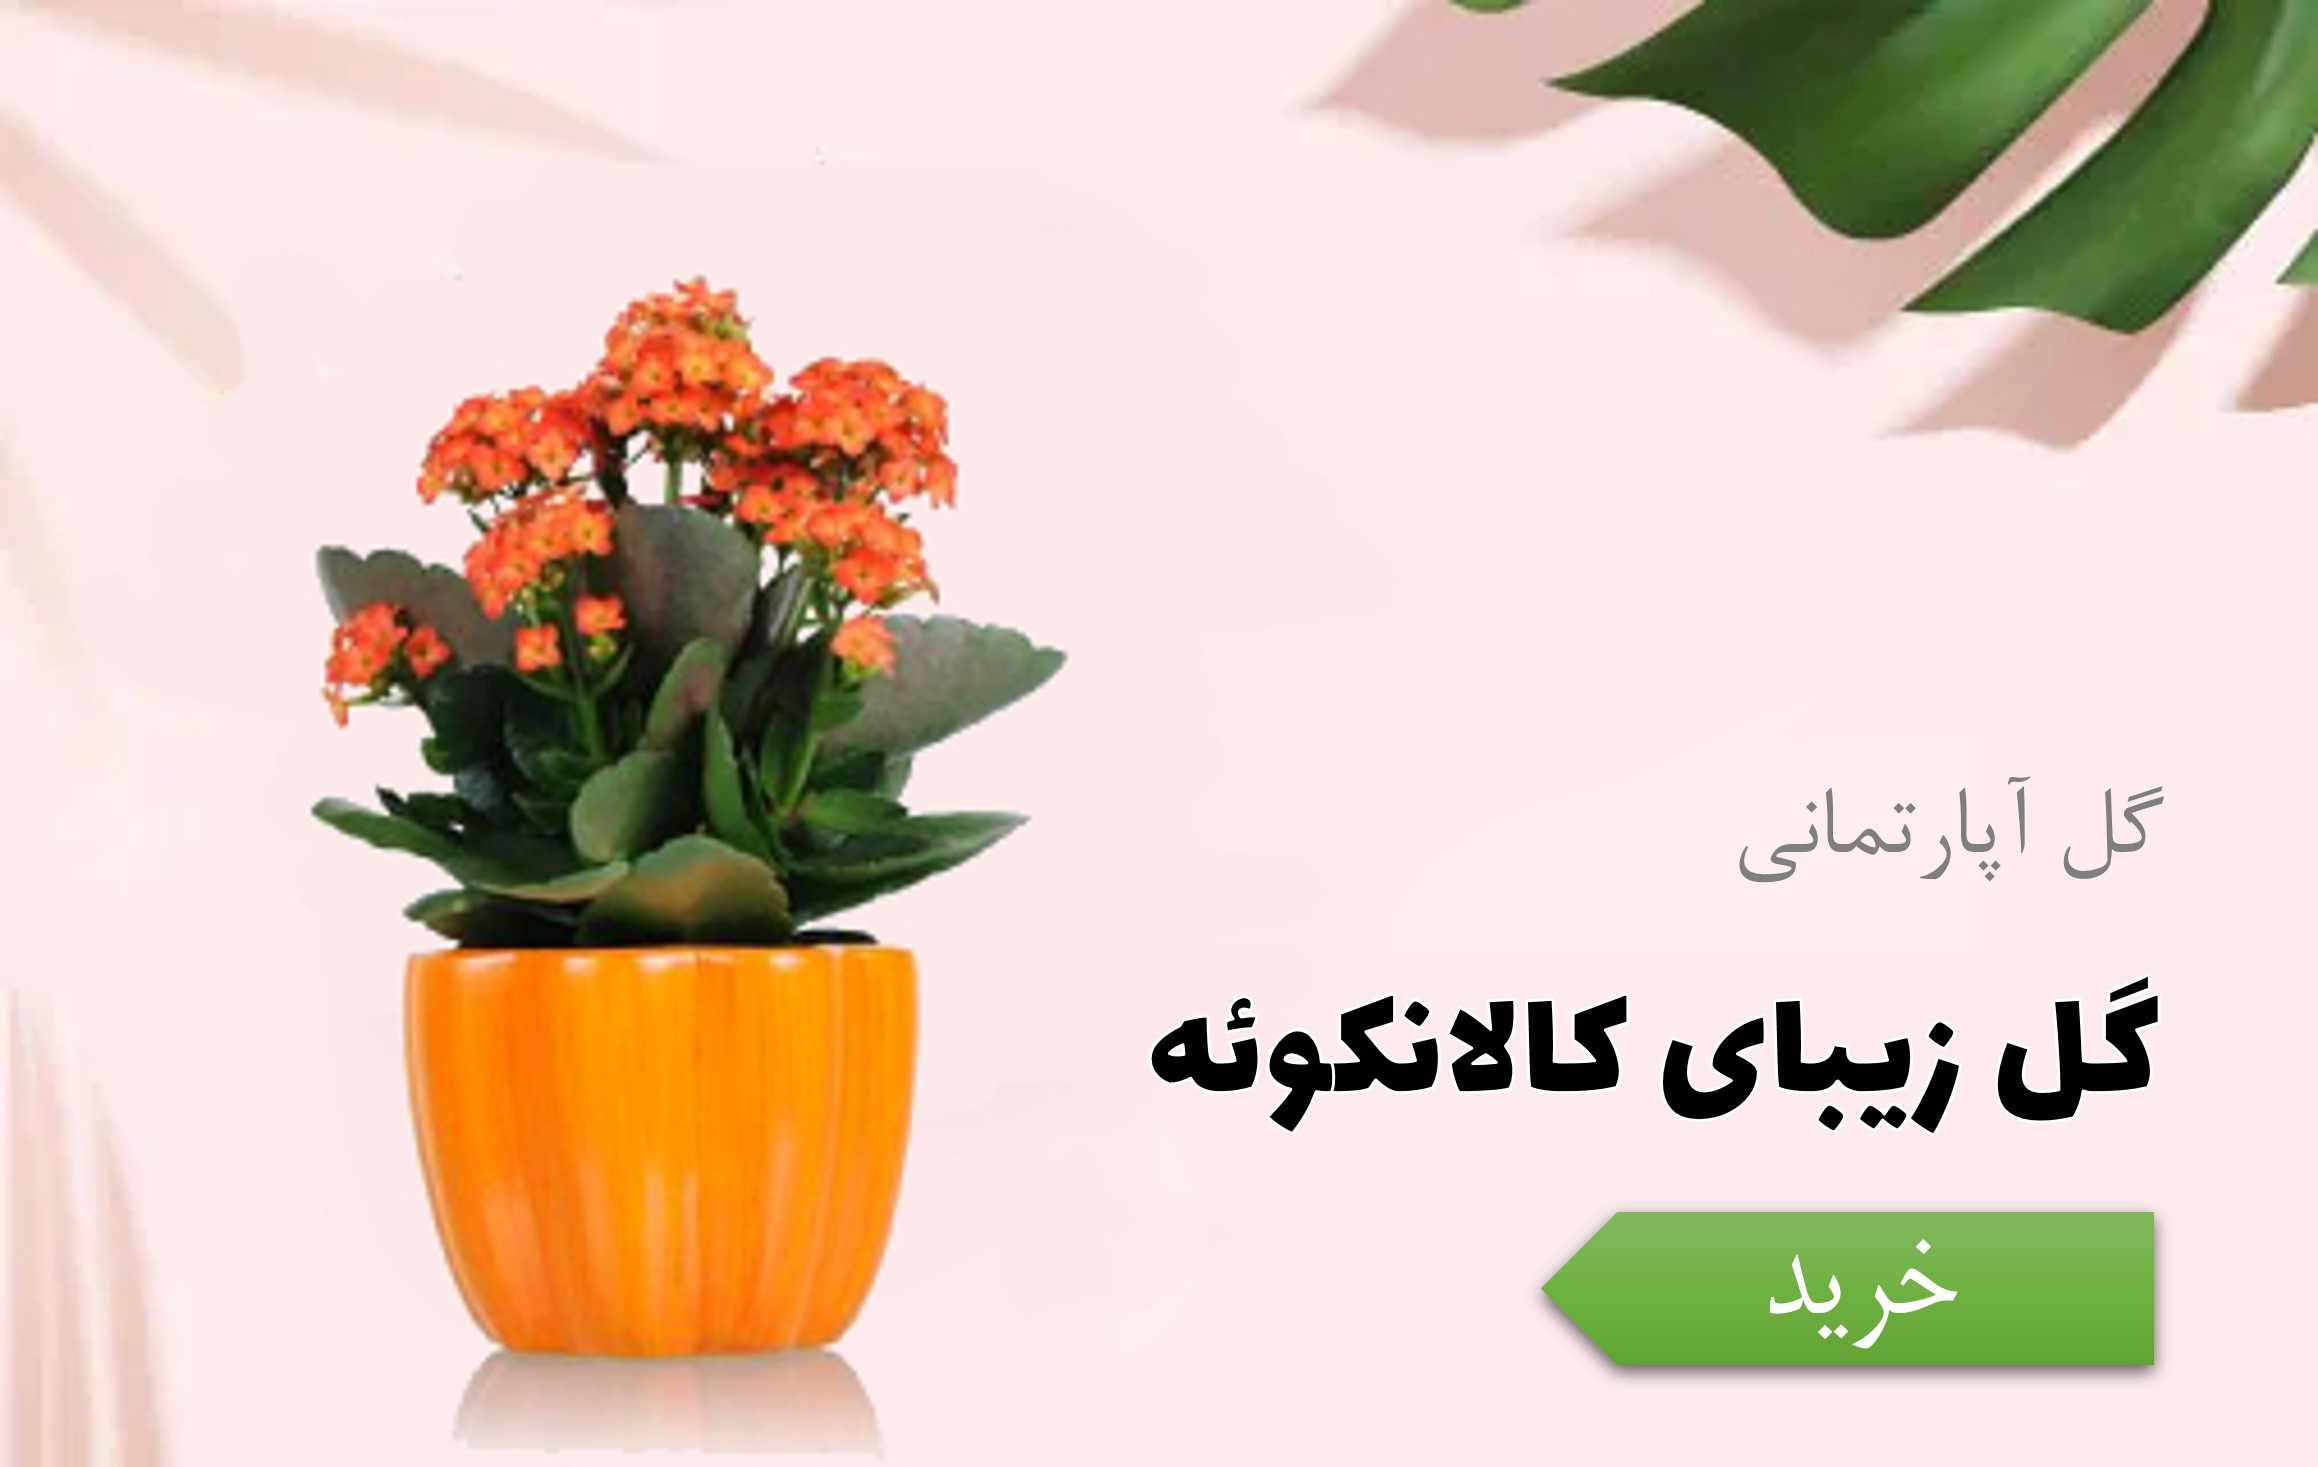 خرید گل بهاری کالانکوئه - سفارش گل برای عید نوروز و سفره هفت سین